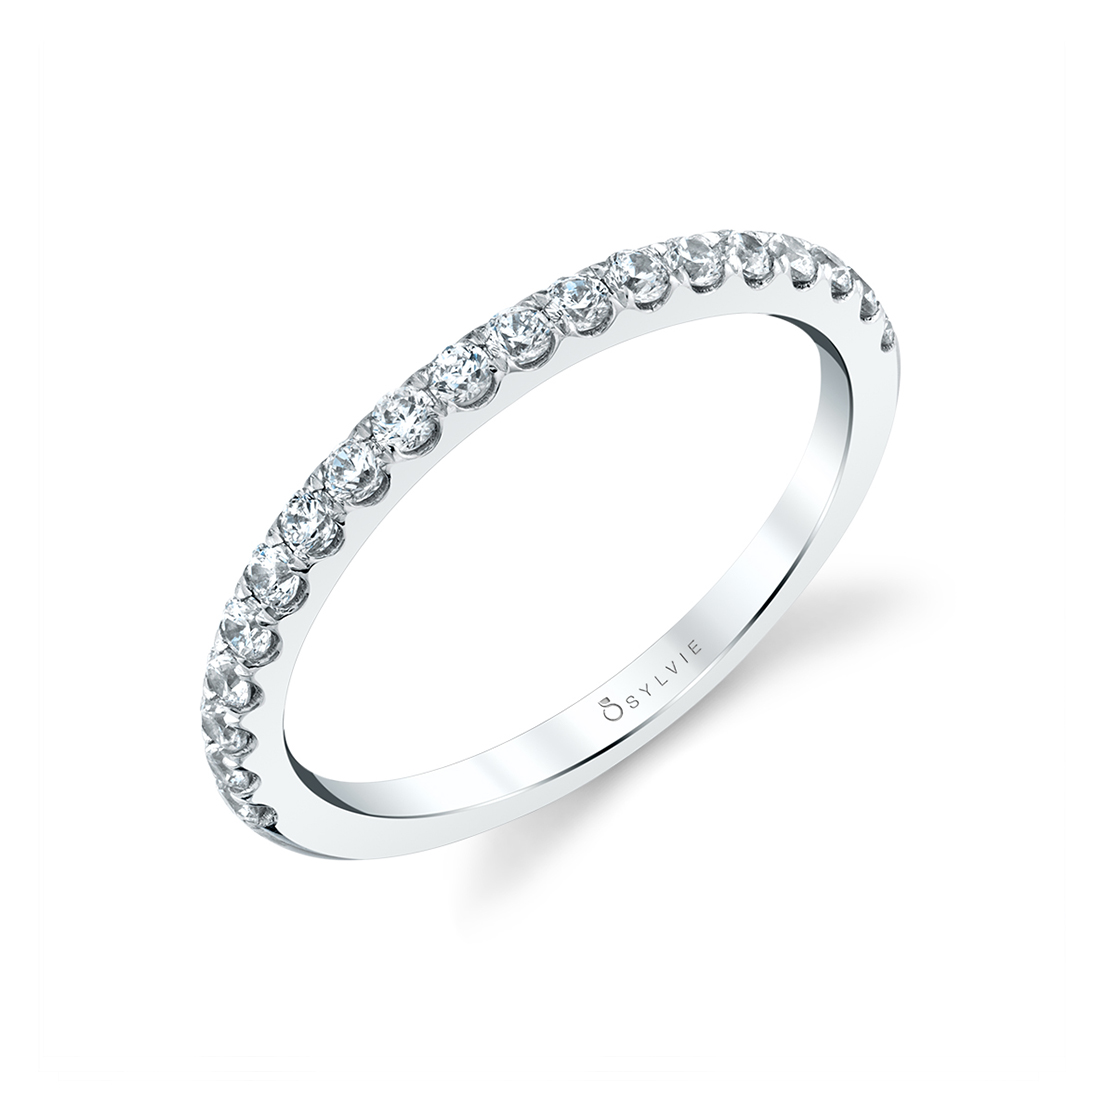 Matching White Gold Diamond Ring to Tamara Engagement Ring